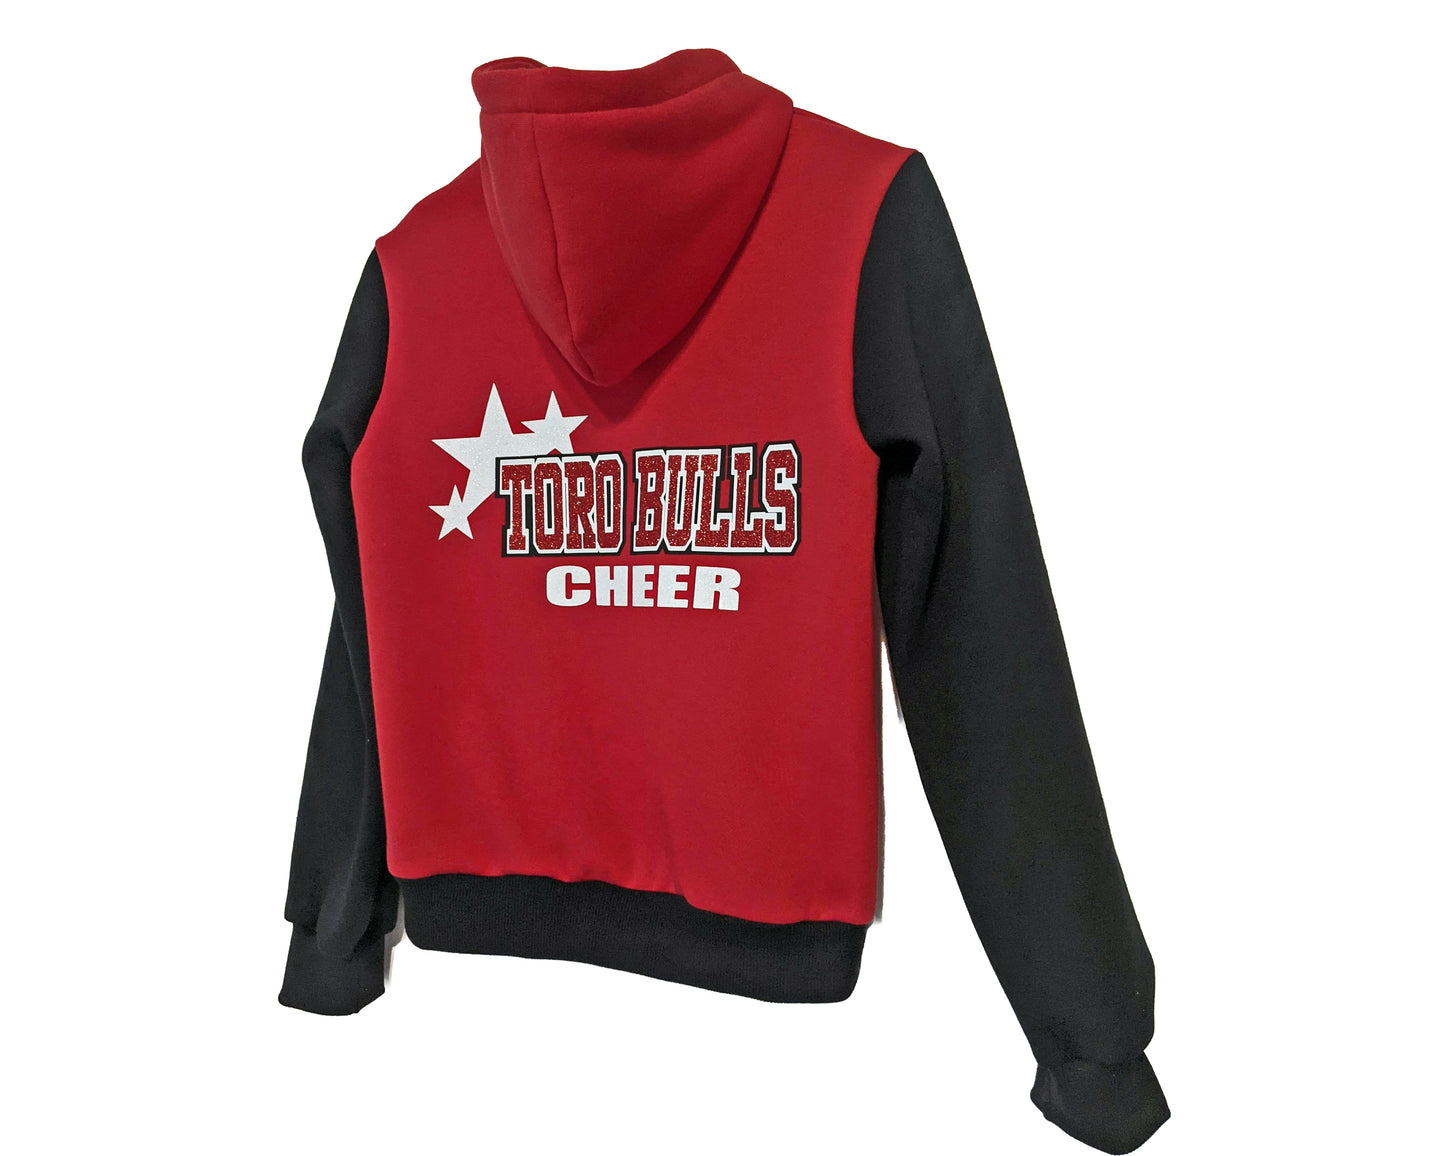 Red and black cheer team hoodie